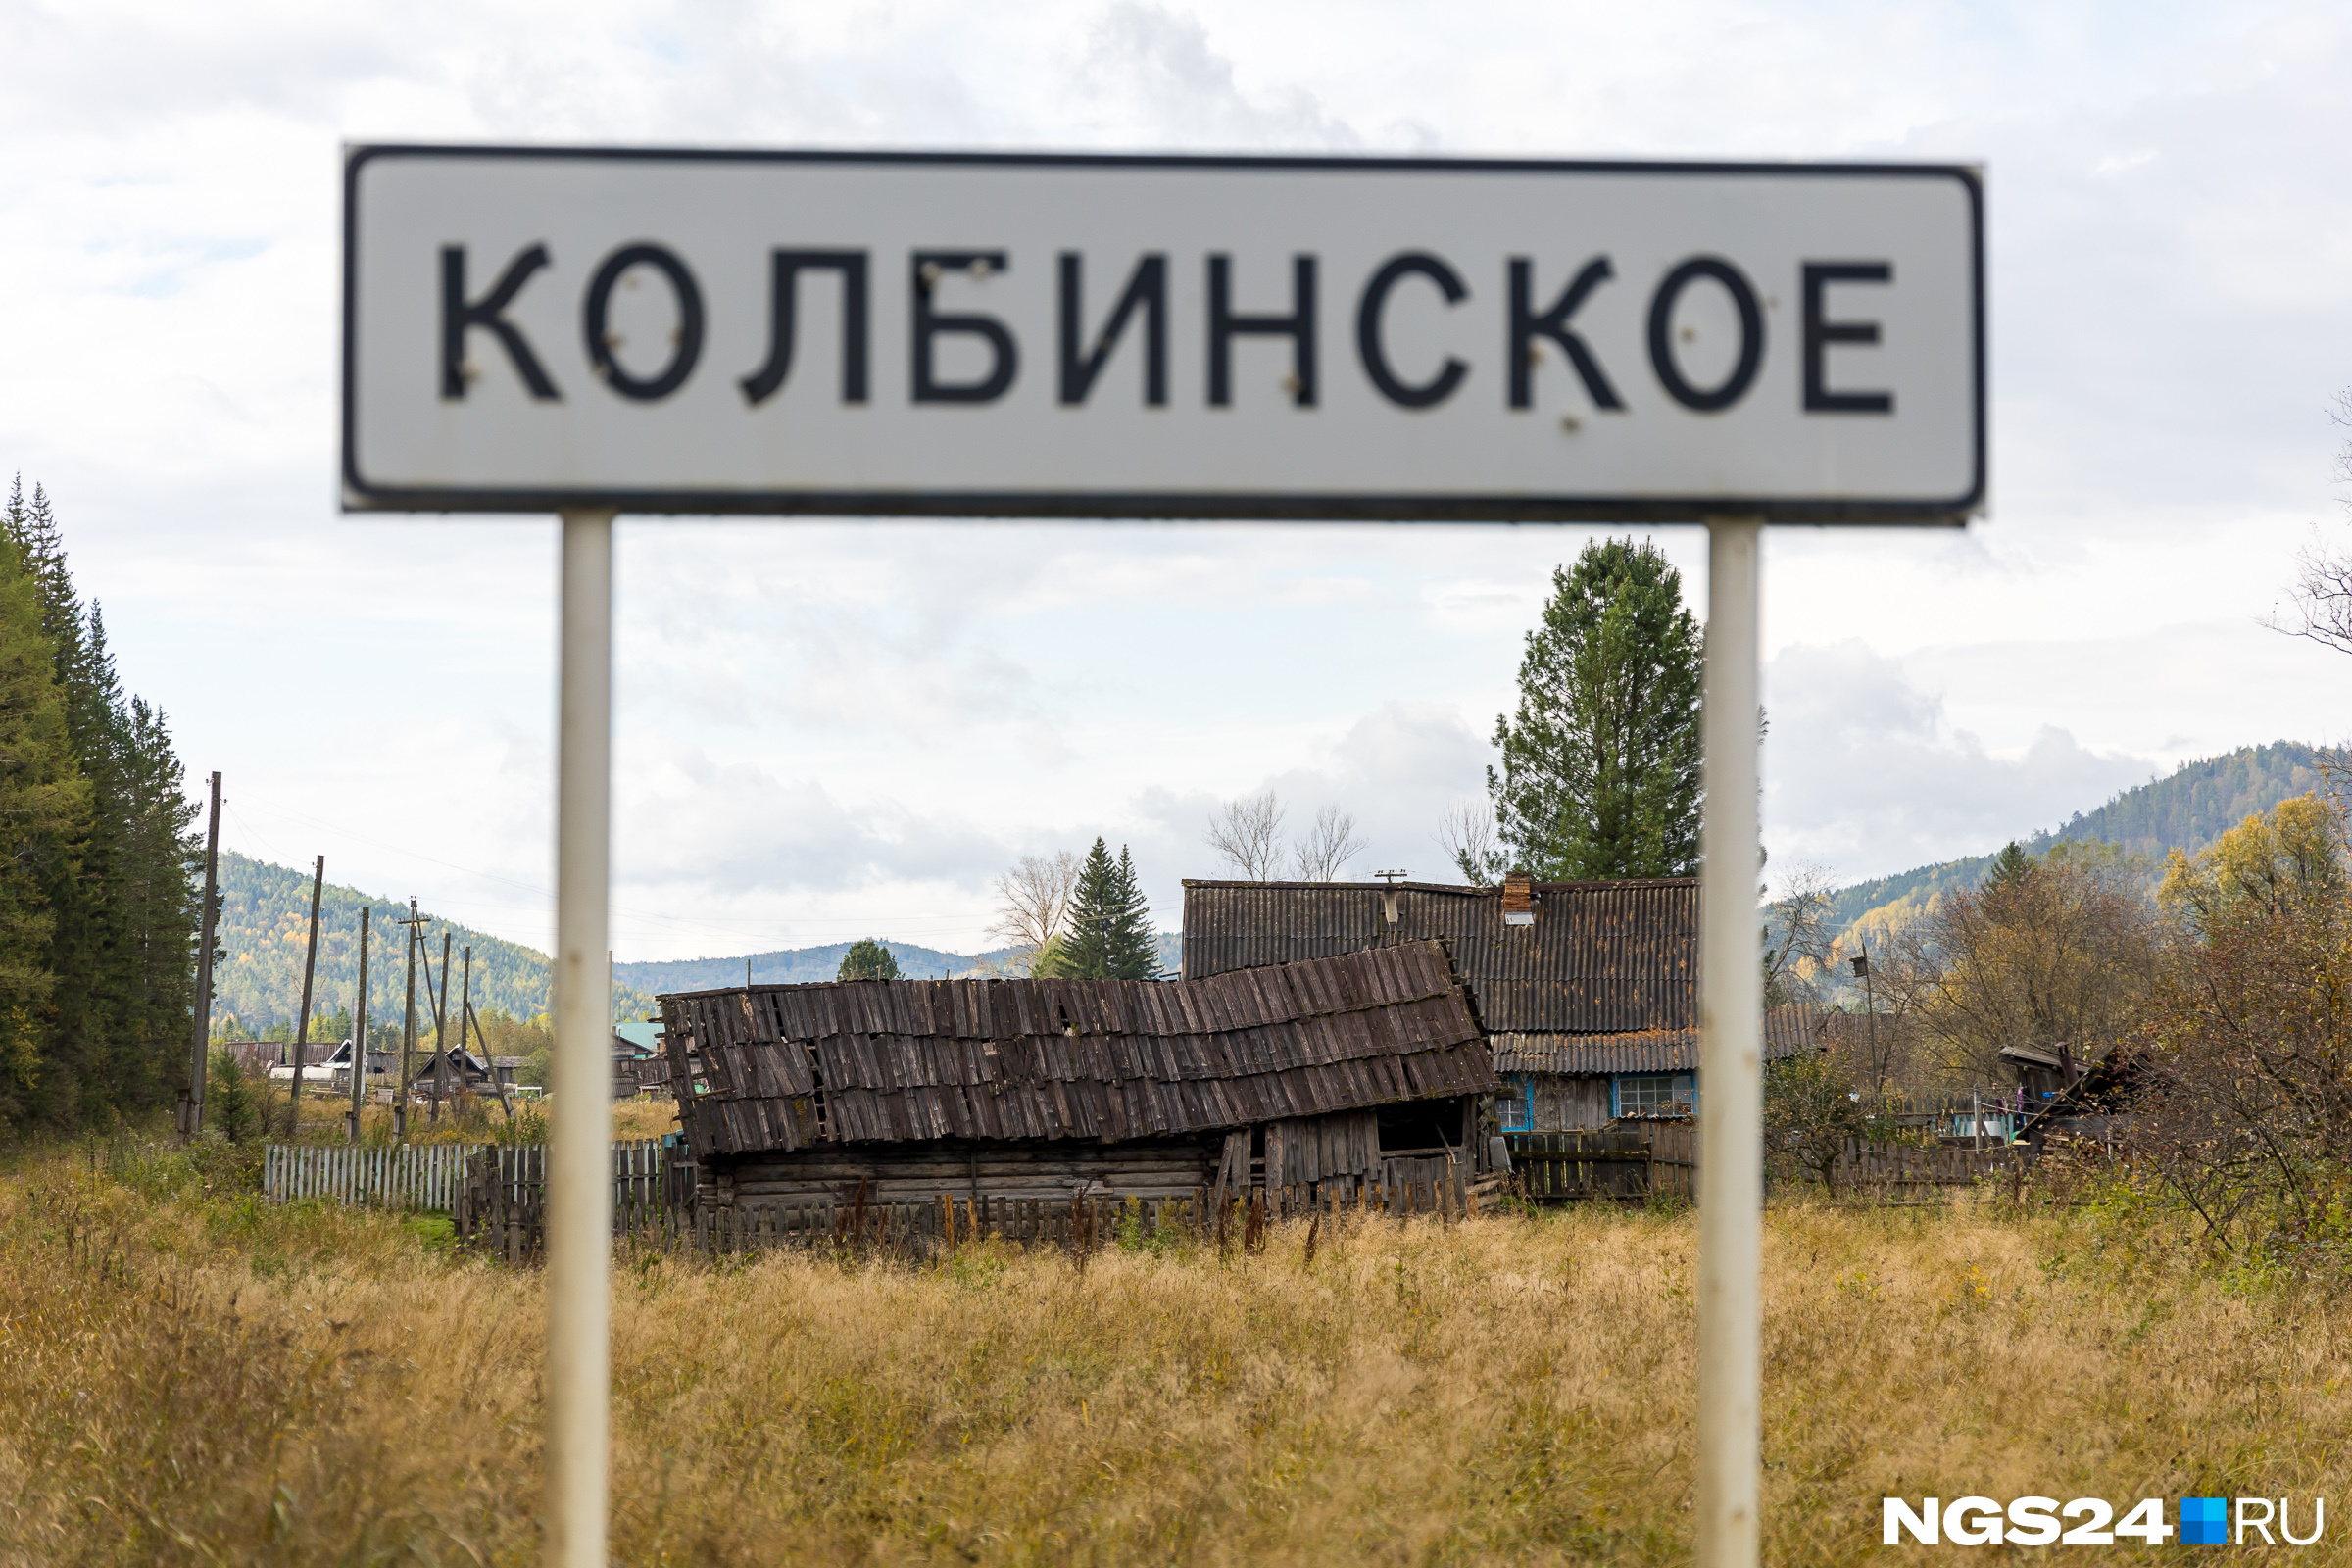 Жители настаивают, что название на въезде поселения неверно — официально поселок называют Колбинский